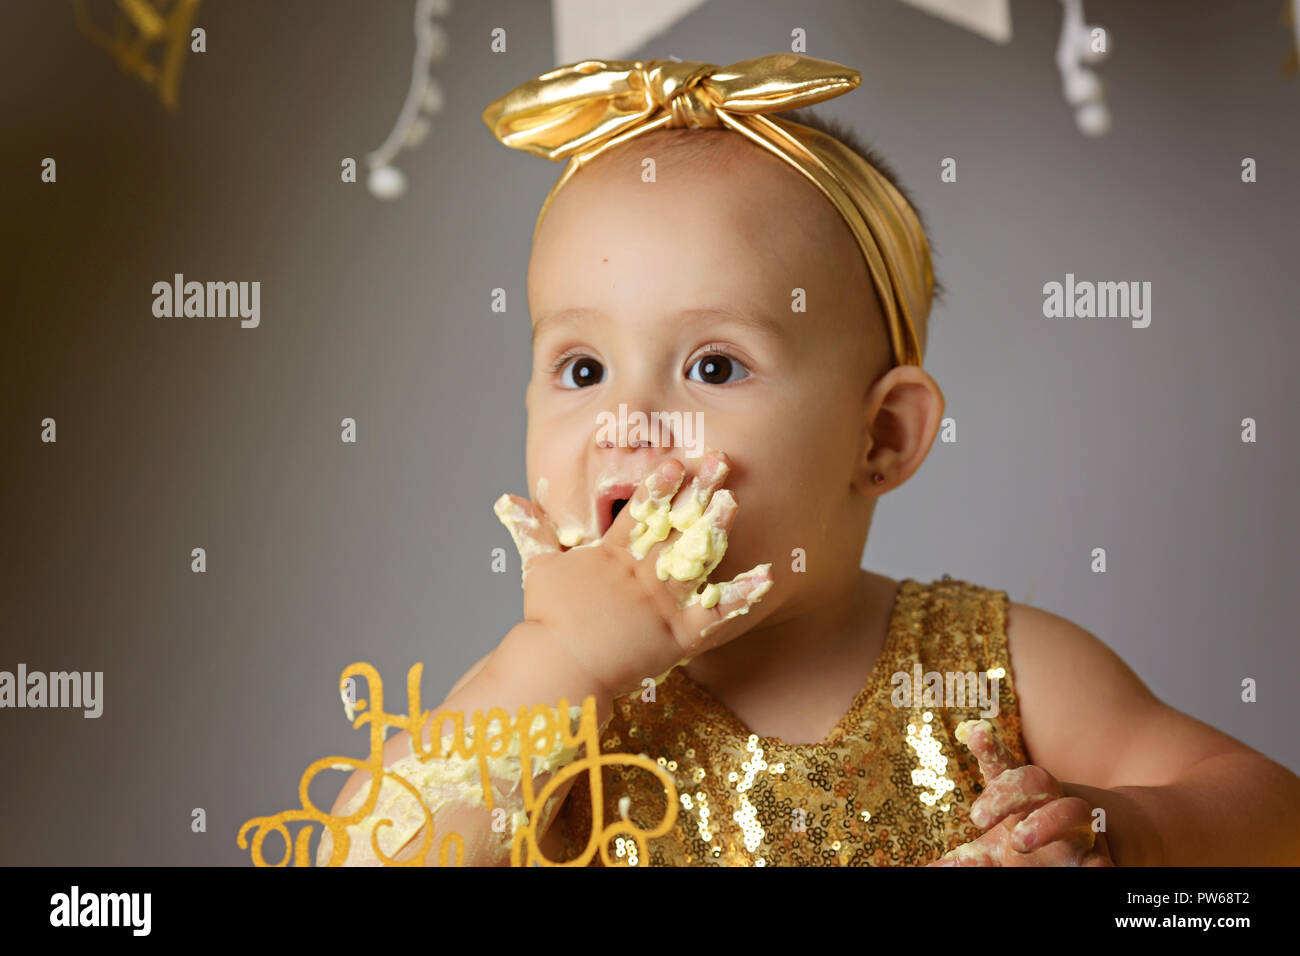 golden frock for baby girl